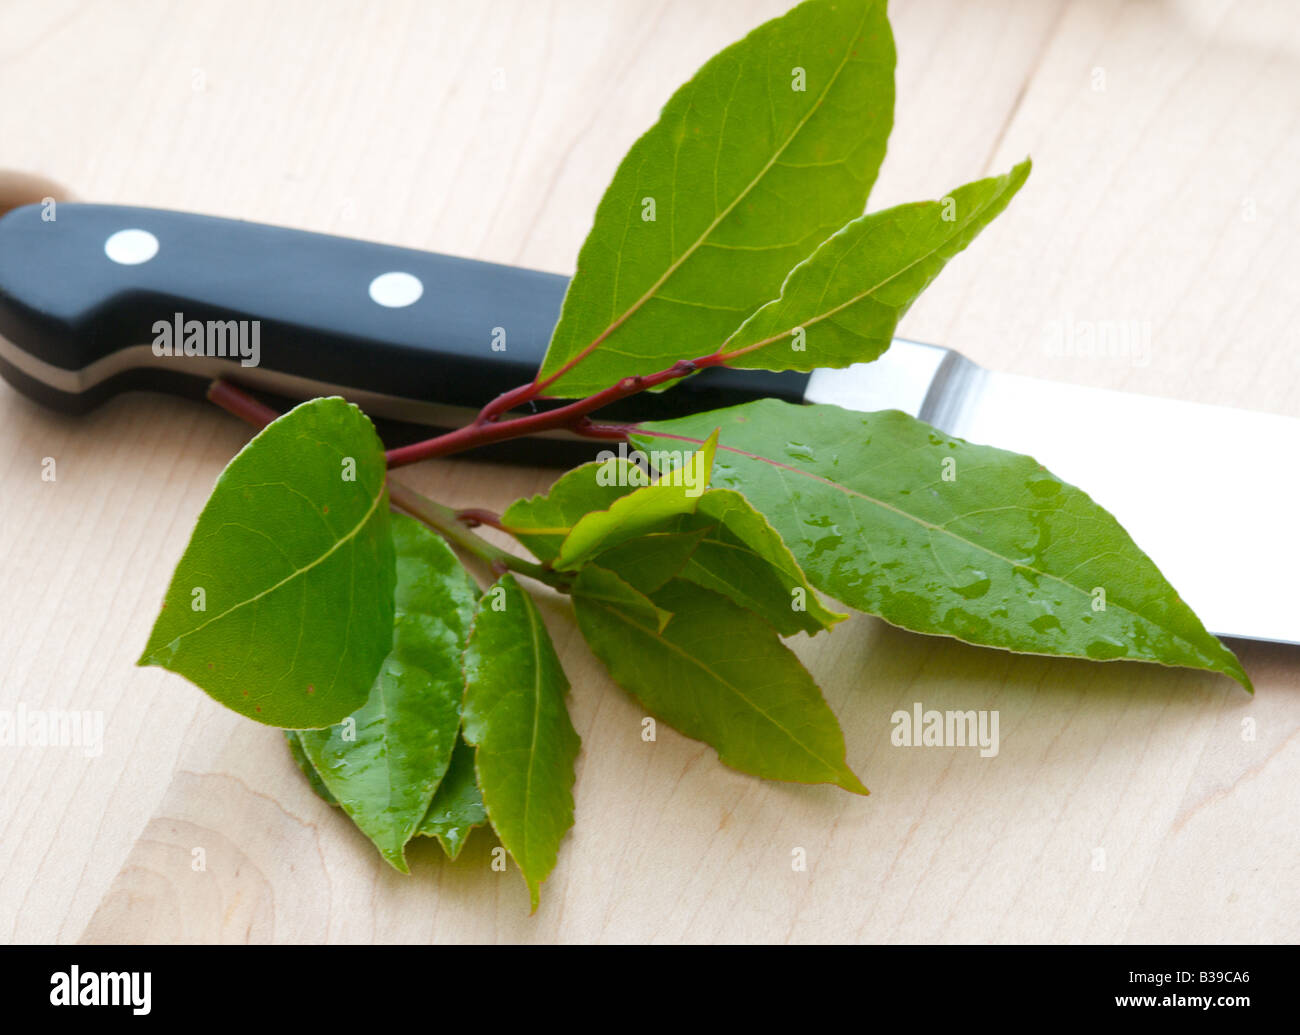 Bay leaf - feuille de laurier Stock Photo - Alamy